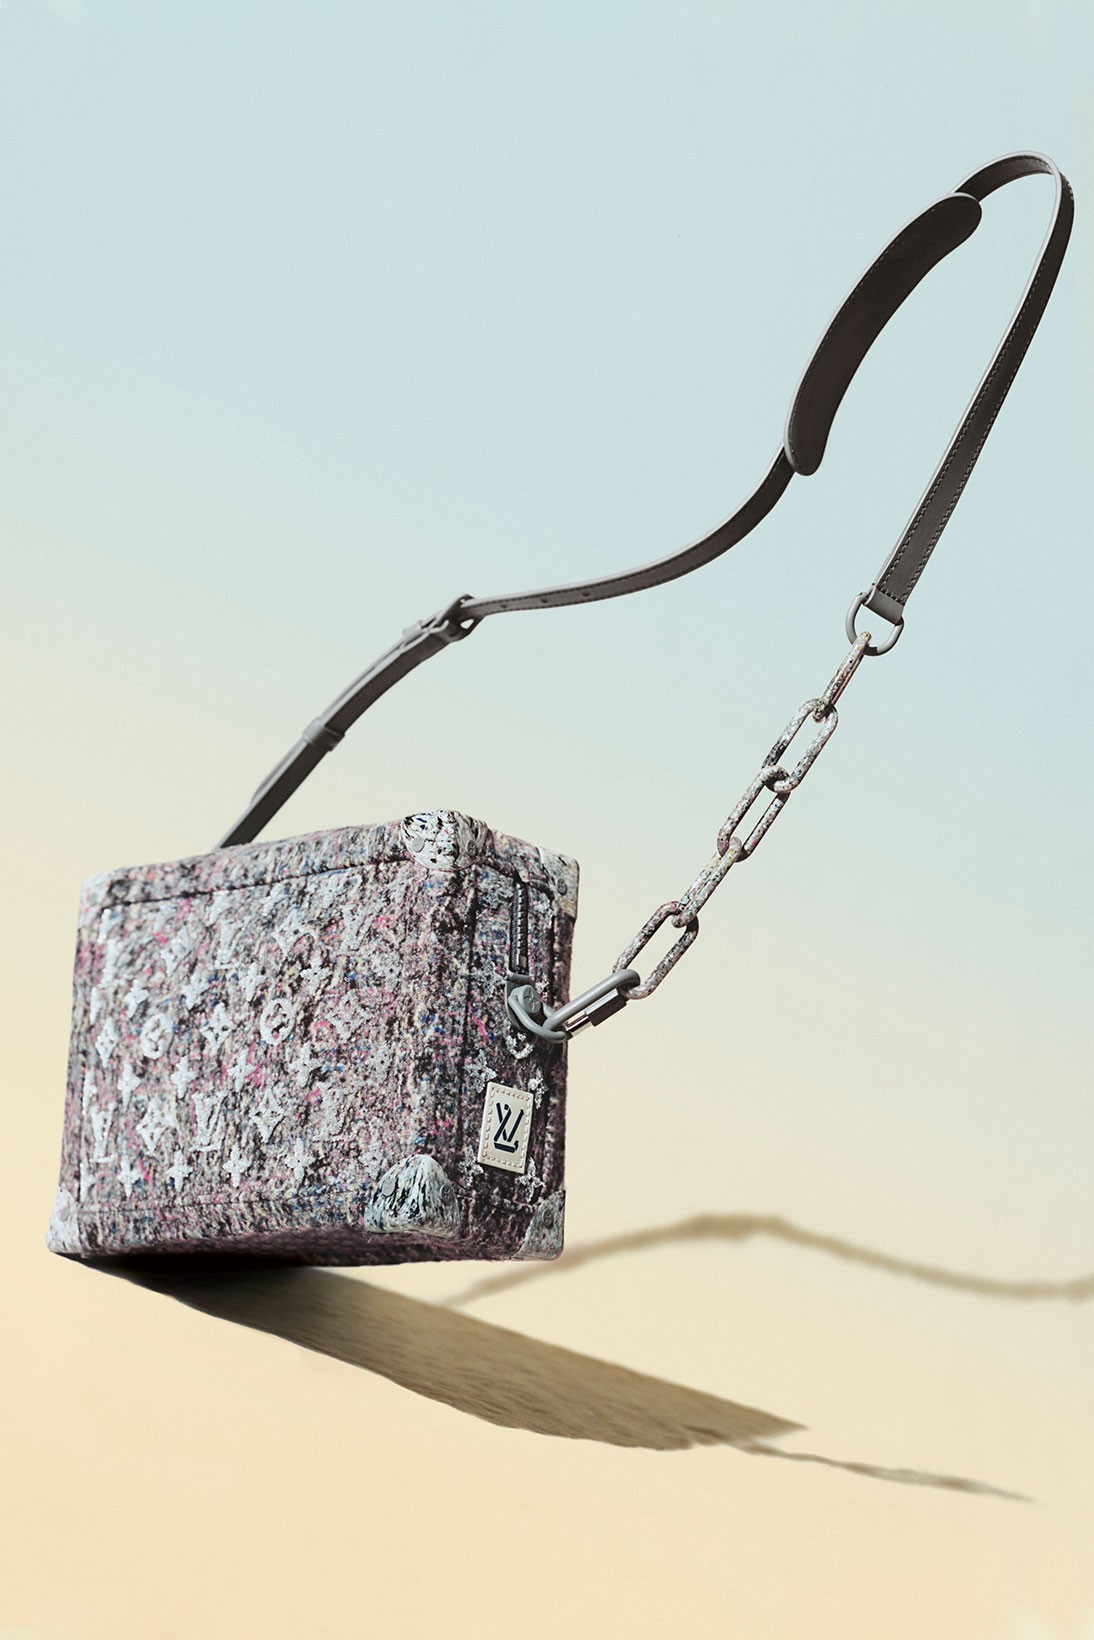 Louis Vuitton сделал сумки из переработанной шерсти и органического хлопка (фото 1)